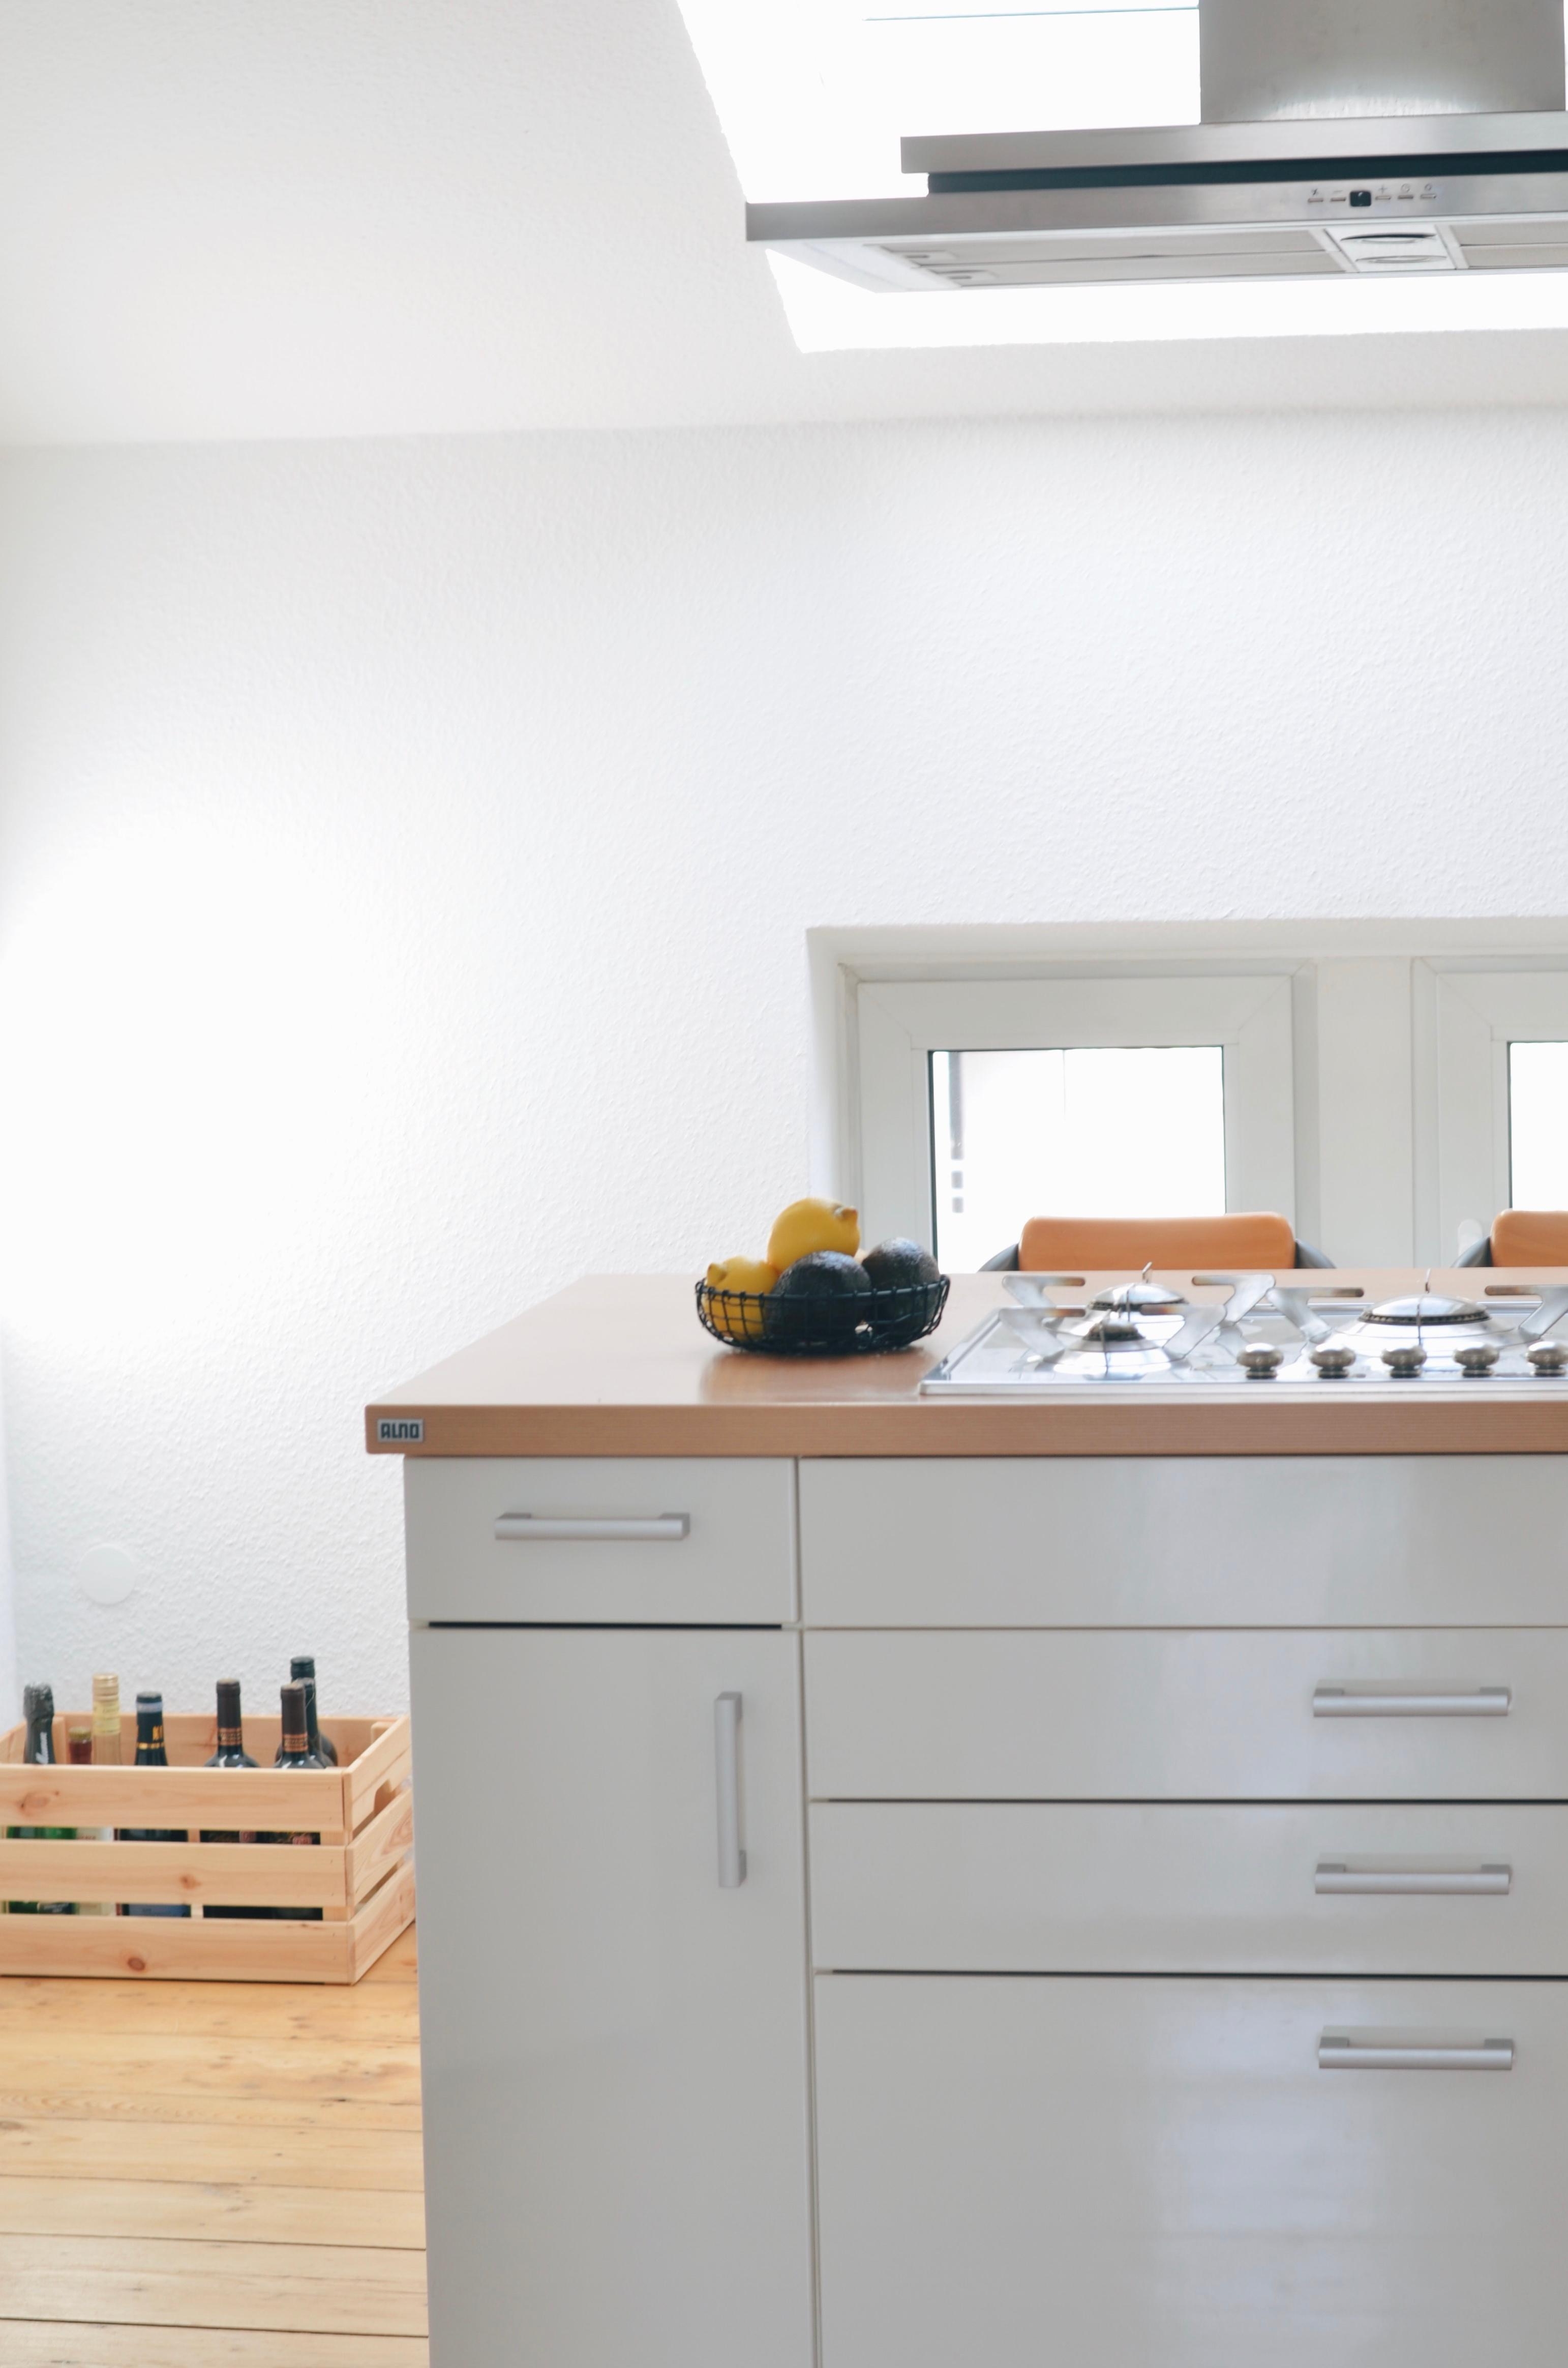 Die KitchenAid Artisan würde sich super in unserer kleinen Küche machen :)
#livingchallenge #küchenliebe